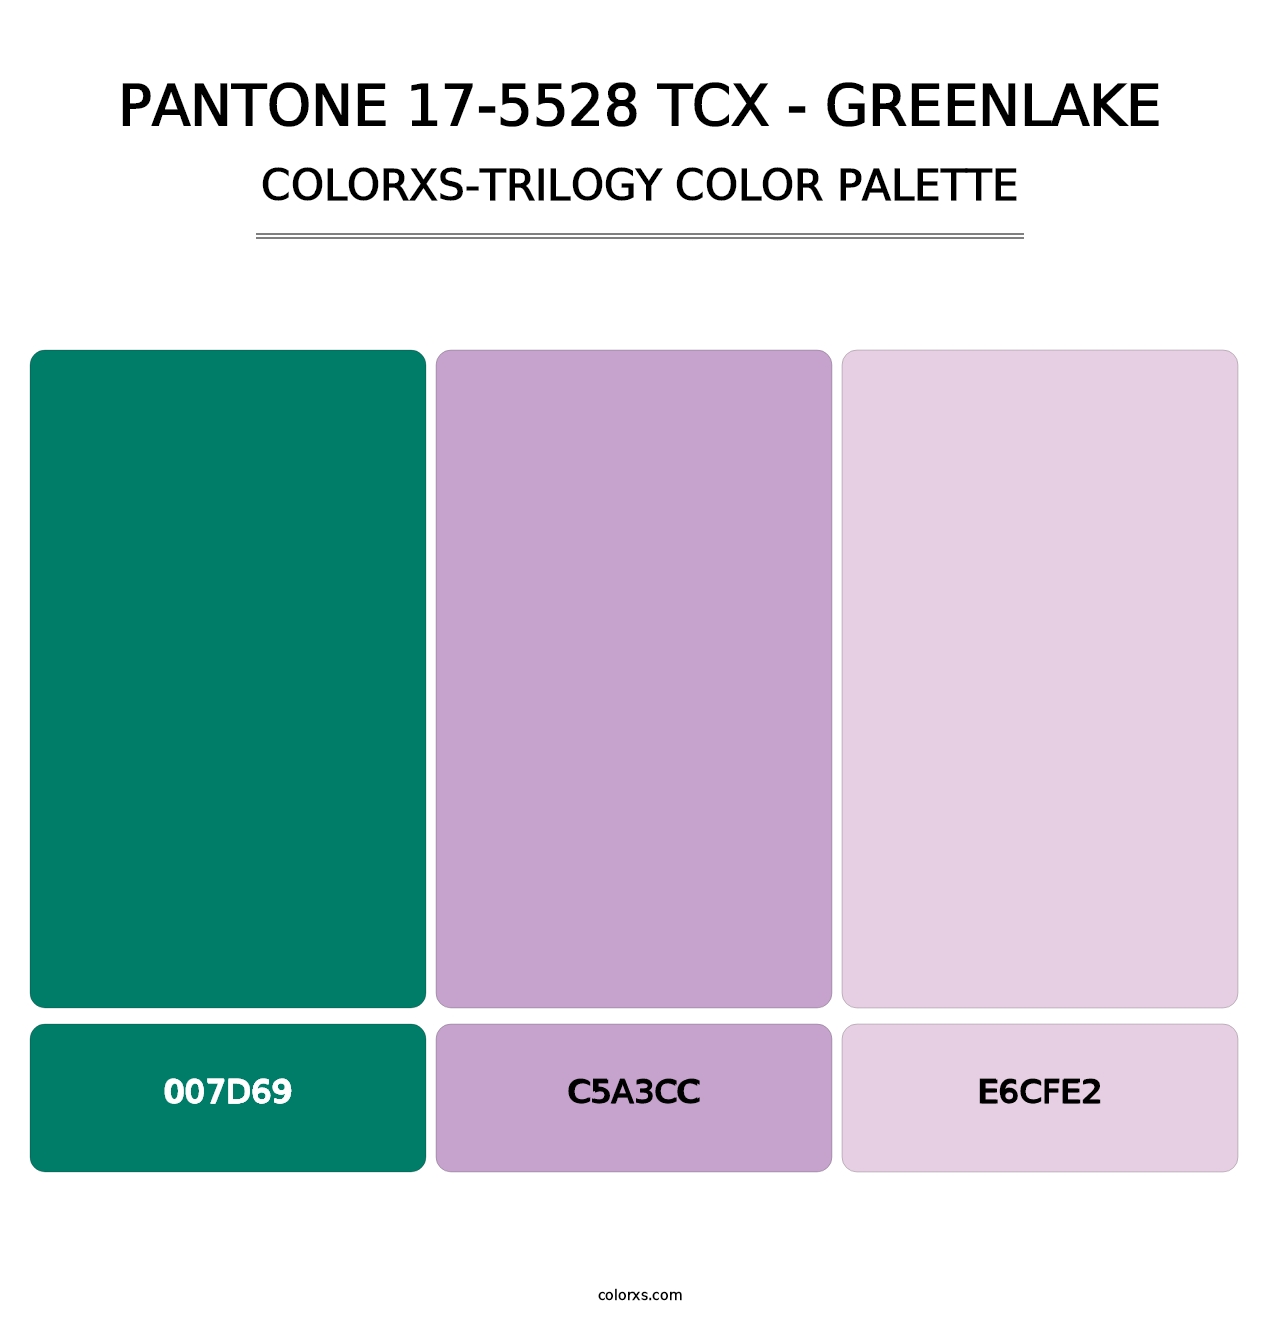 PANTONE 17-5528 TCX - Greenlake - Colorxs Trilogy Palette